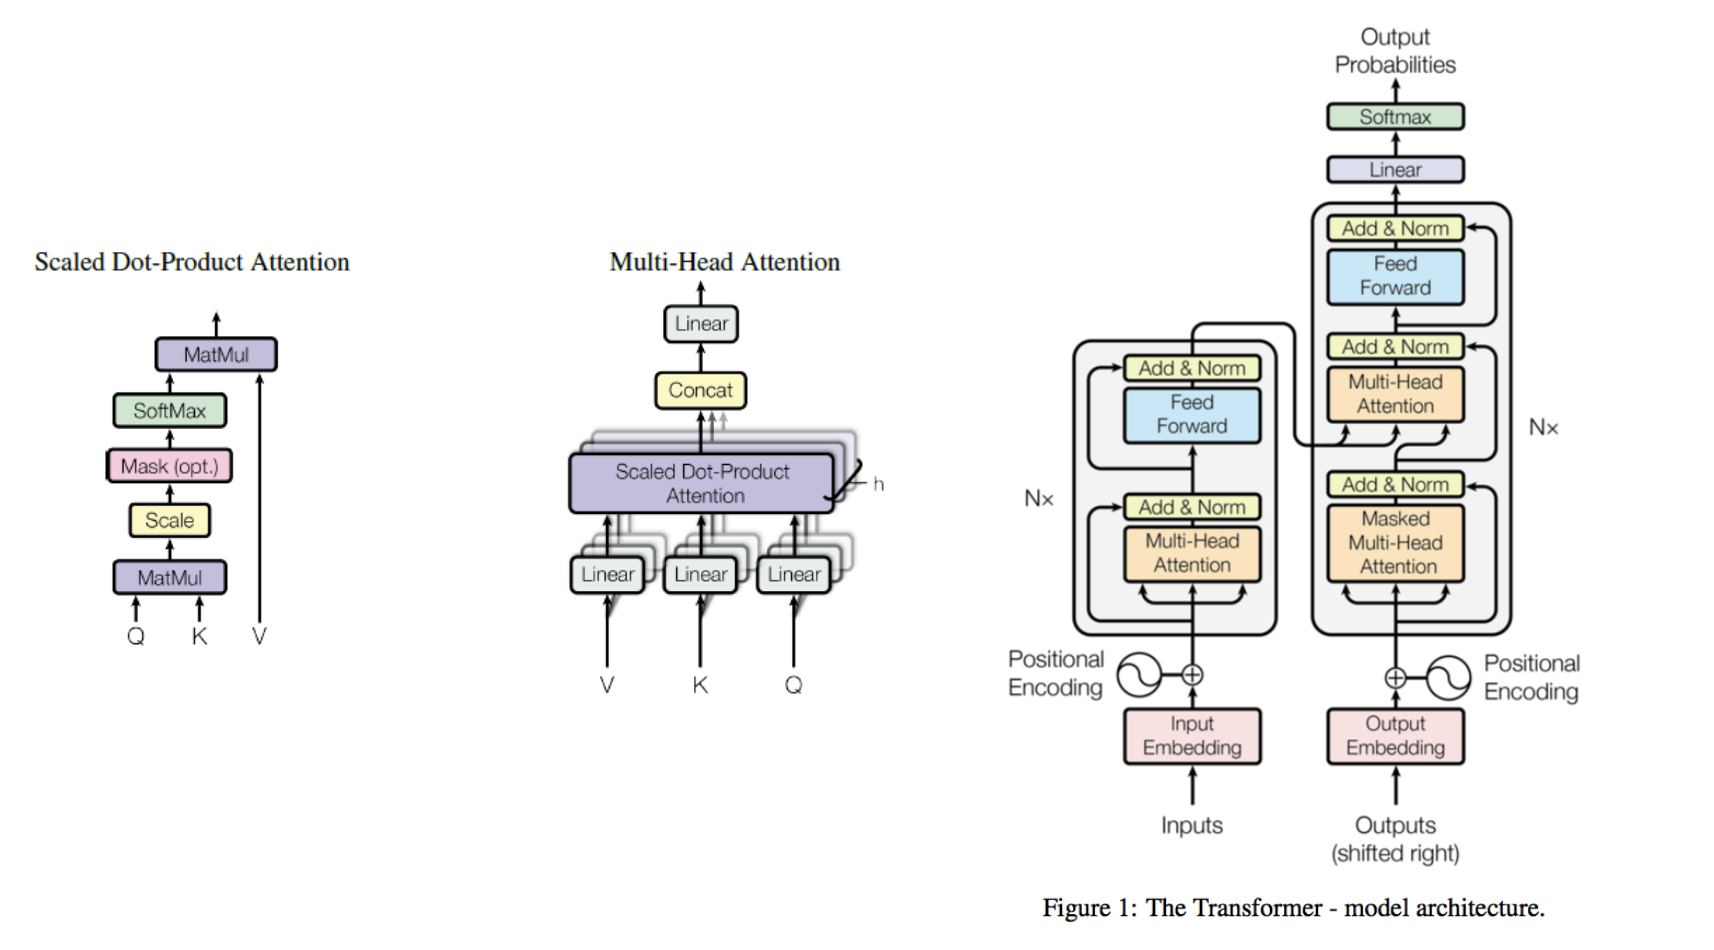 (Слева) Схематиченое изображение операции Attention
(Центр) Аггрегация информации из различных голов трансформера
(Справа) Блок энкодера/декодера в трансформере